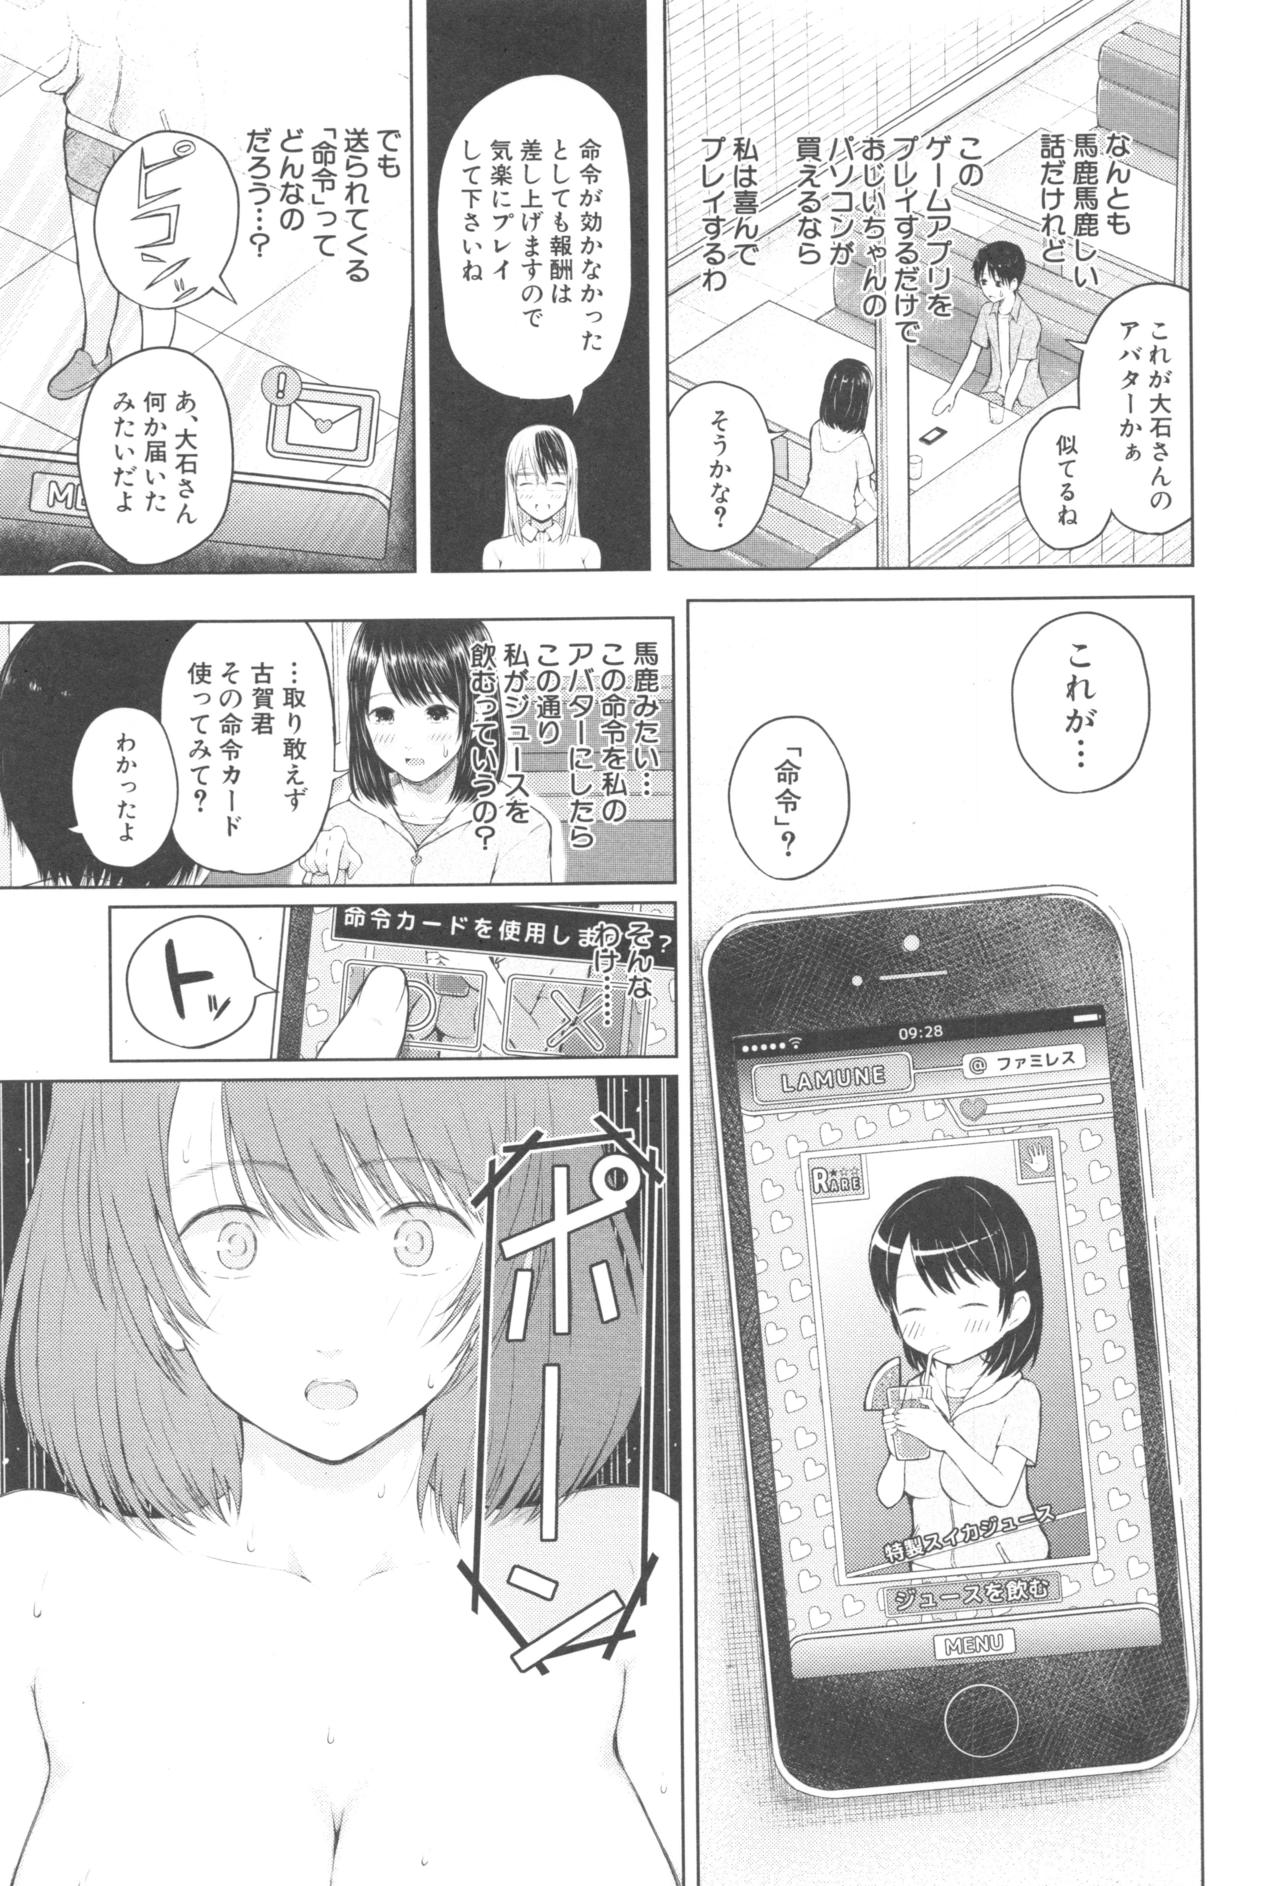 [Shioroku] Smapho de ii nari Juujun Kanojo - Application Software of Sexual Arousal Smartphone 95